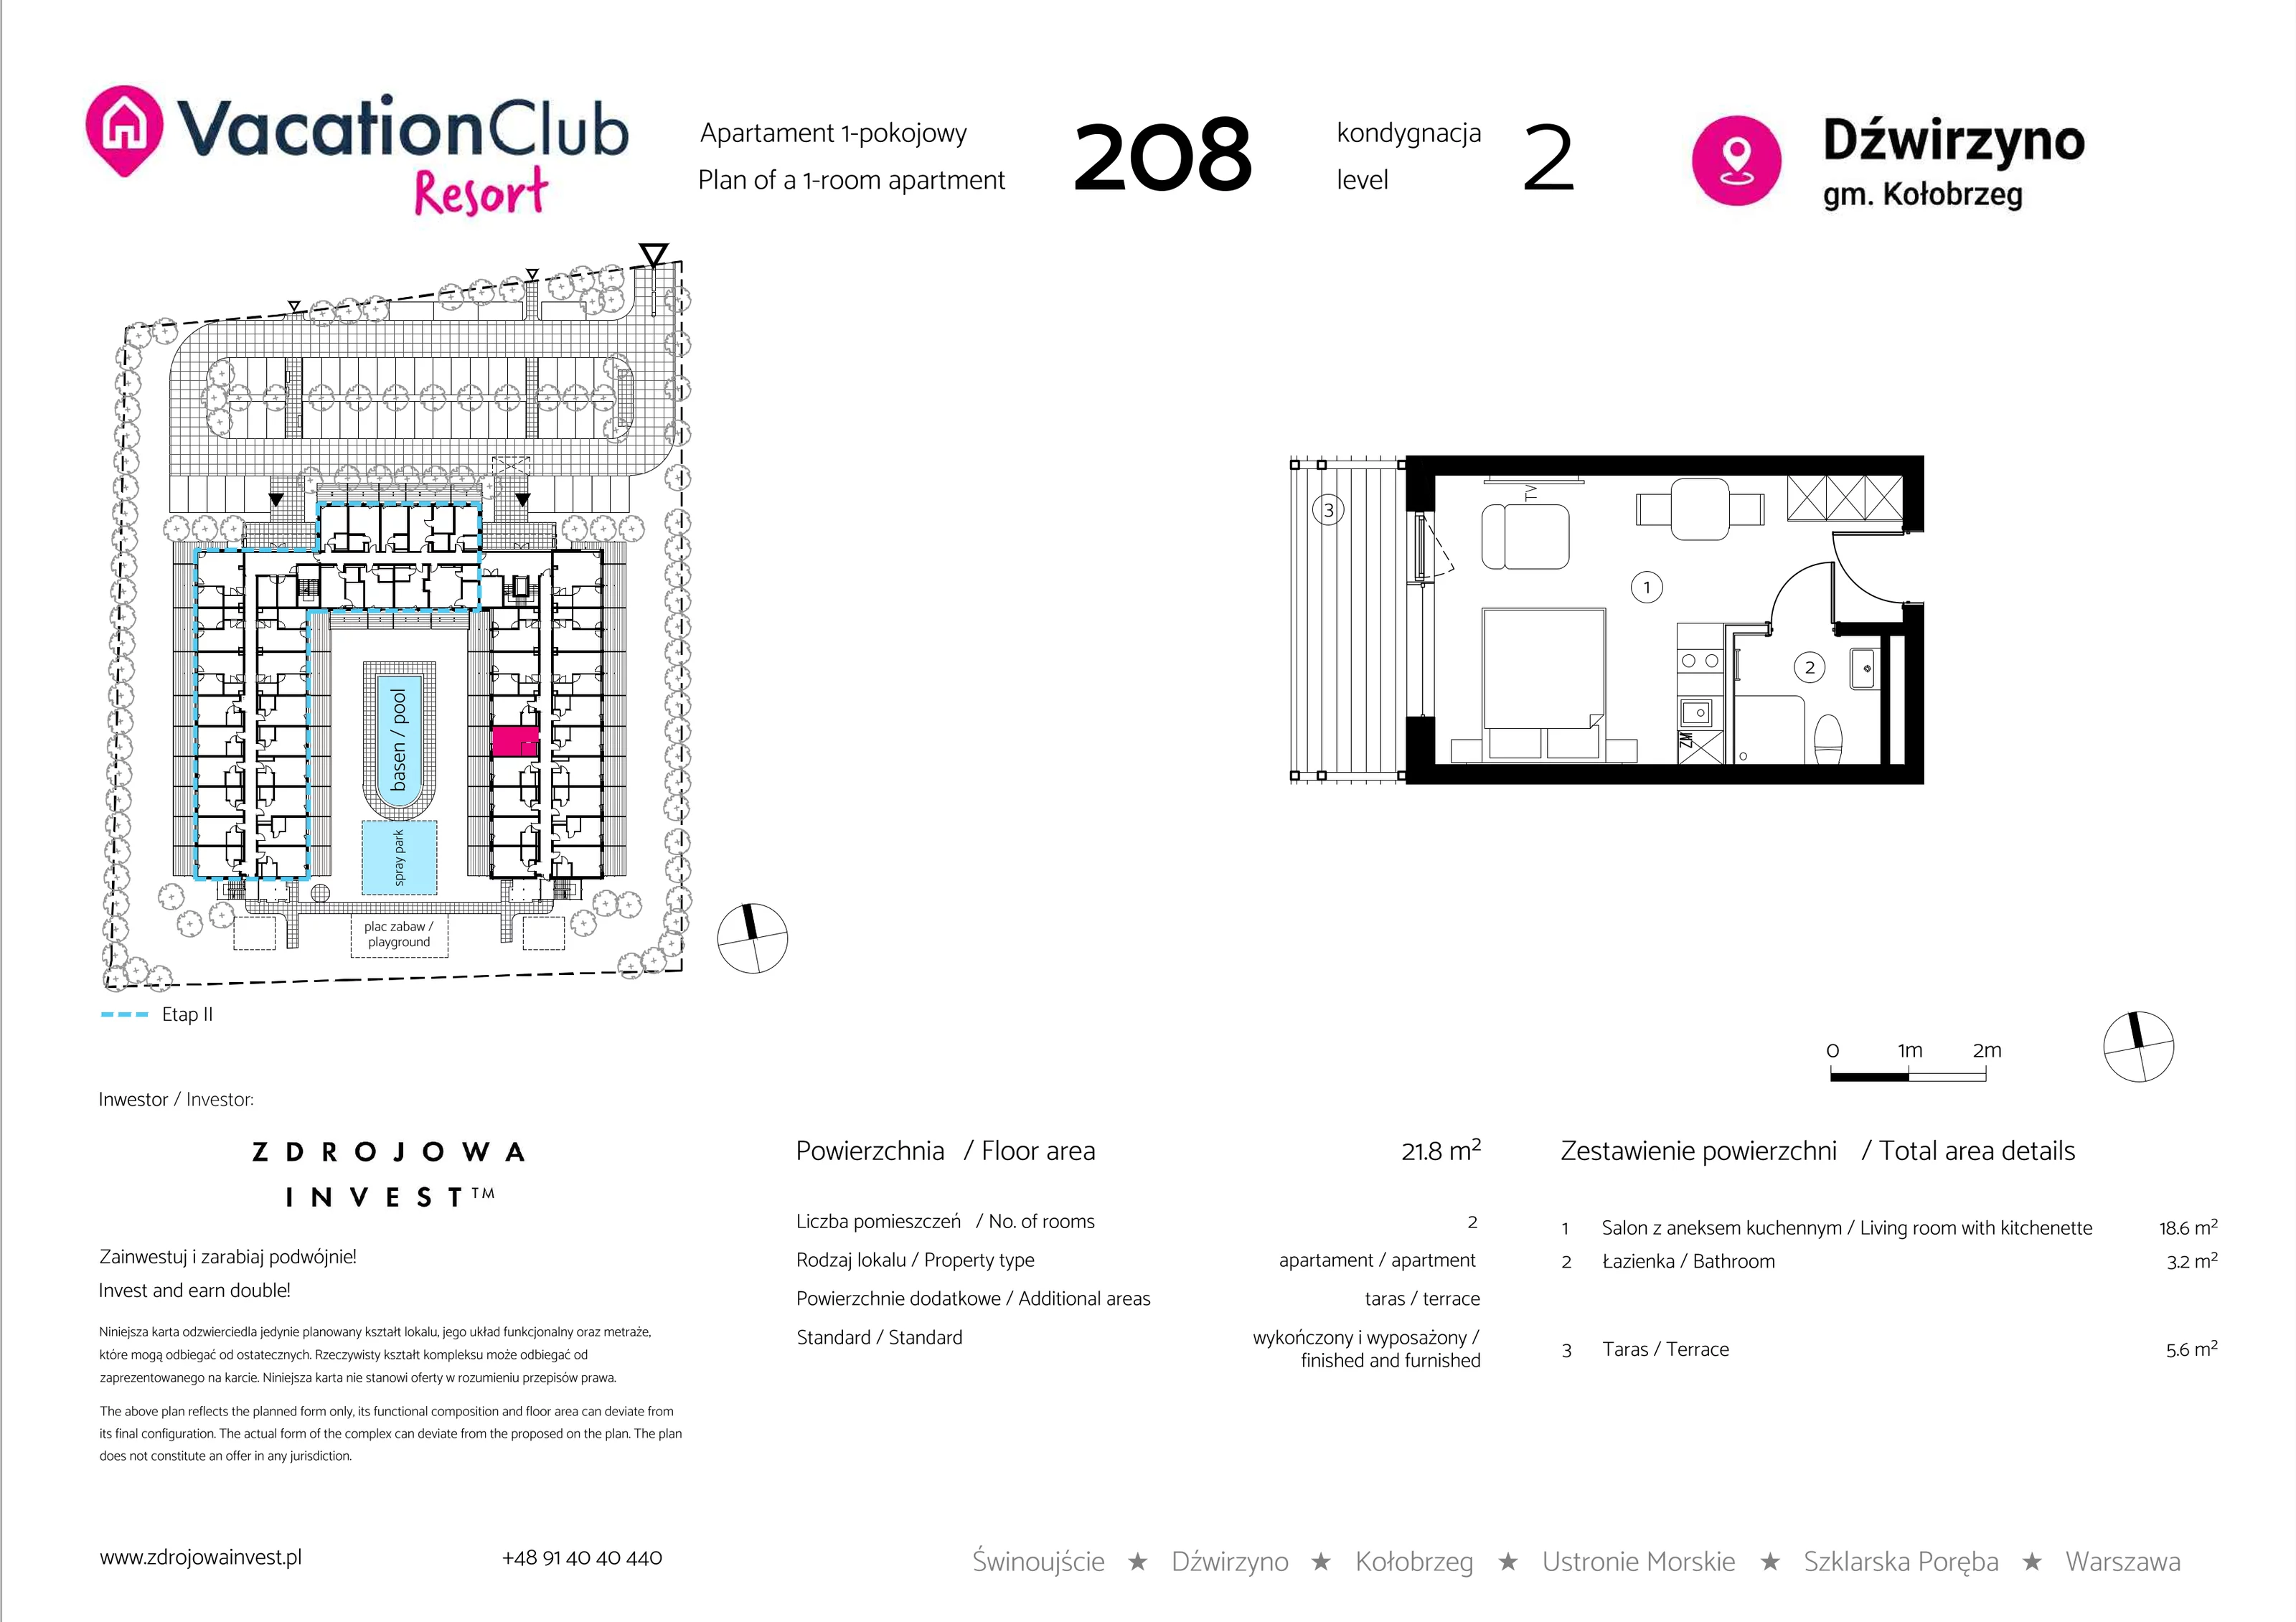 Apartament 21,80 m², piętro 1, oferta nr 208, Vacation Club Resort - apartamenty wakacyjne, Dźwirzyno, ul. Wczasowa 8